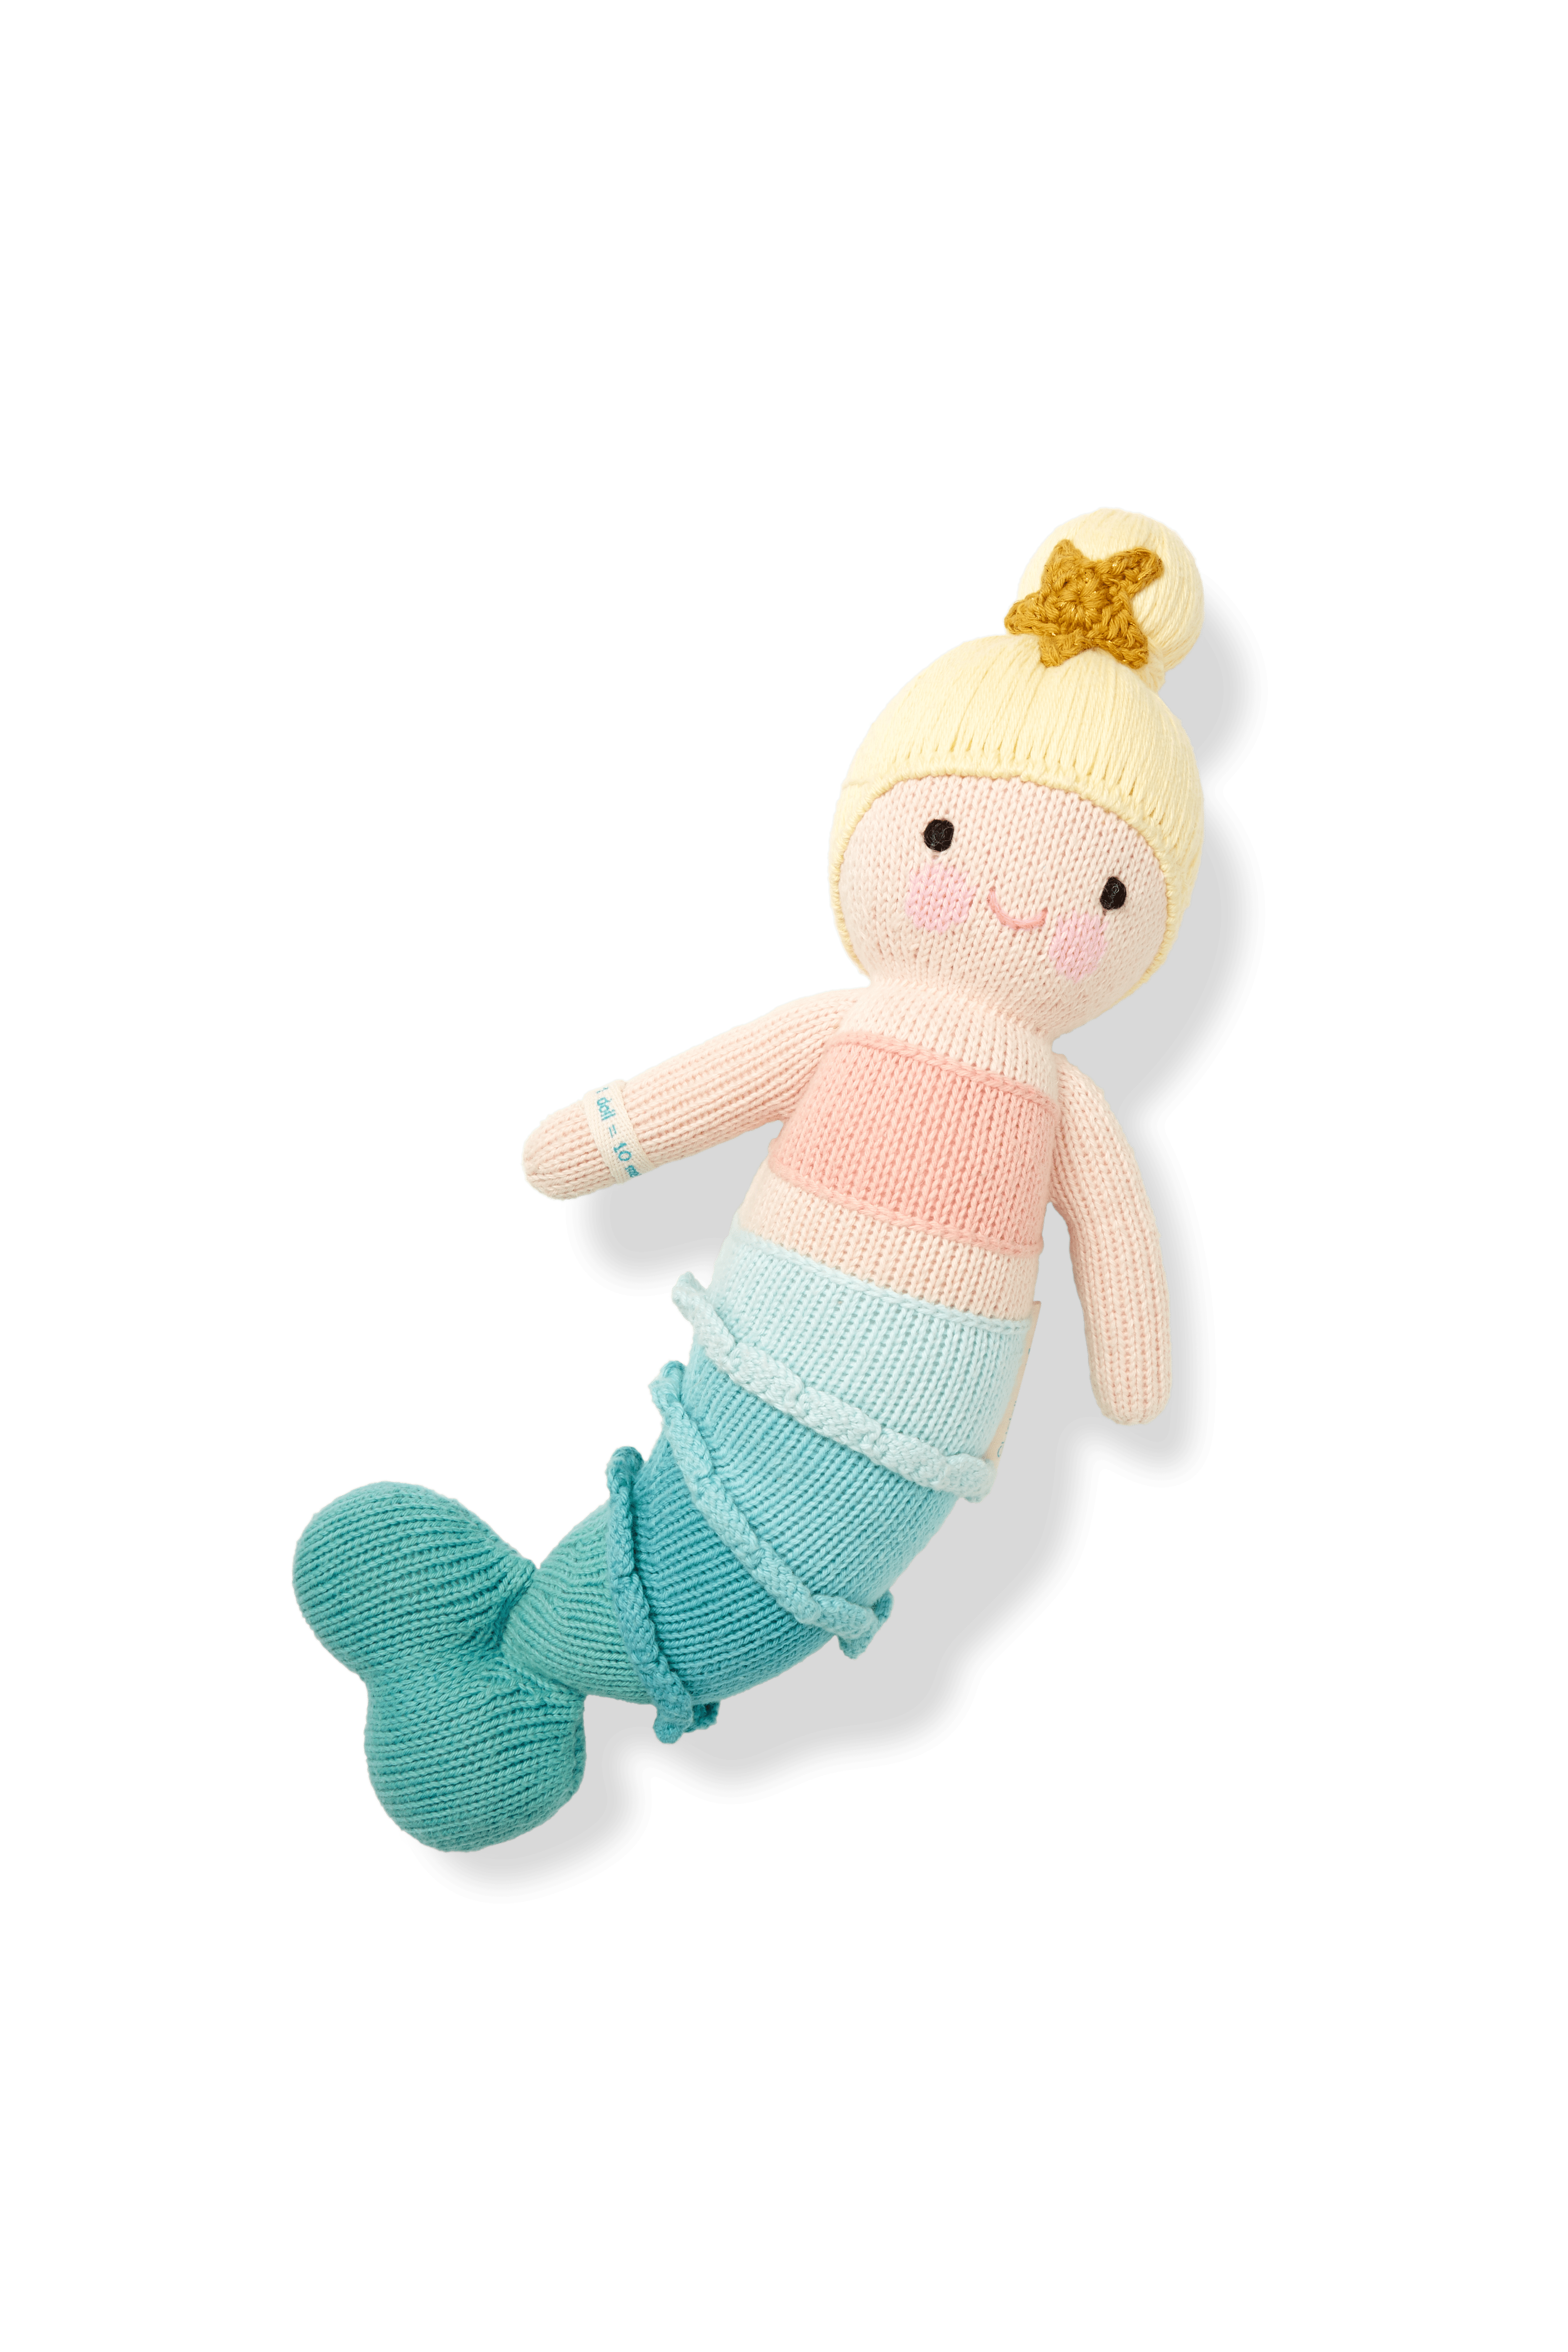 cuddle and kind mermaid